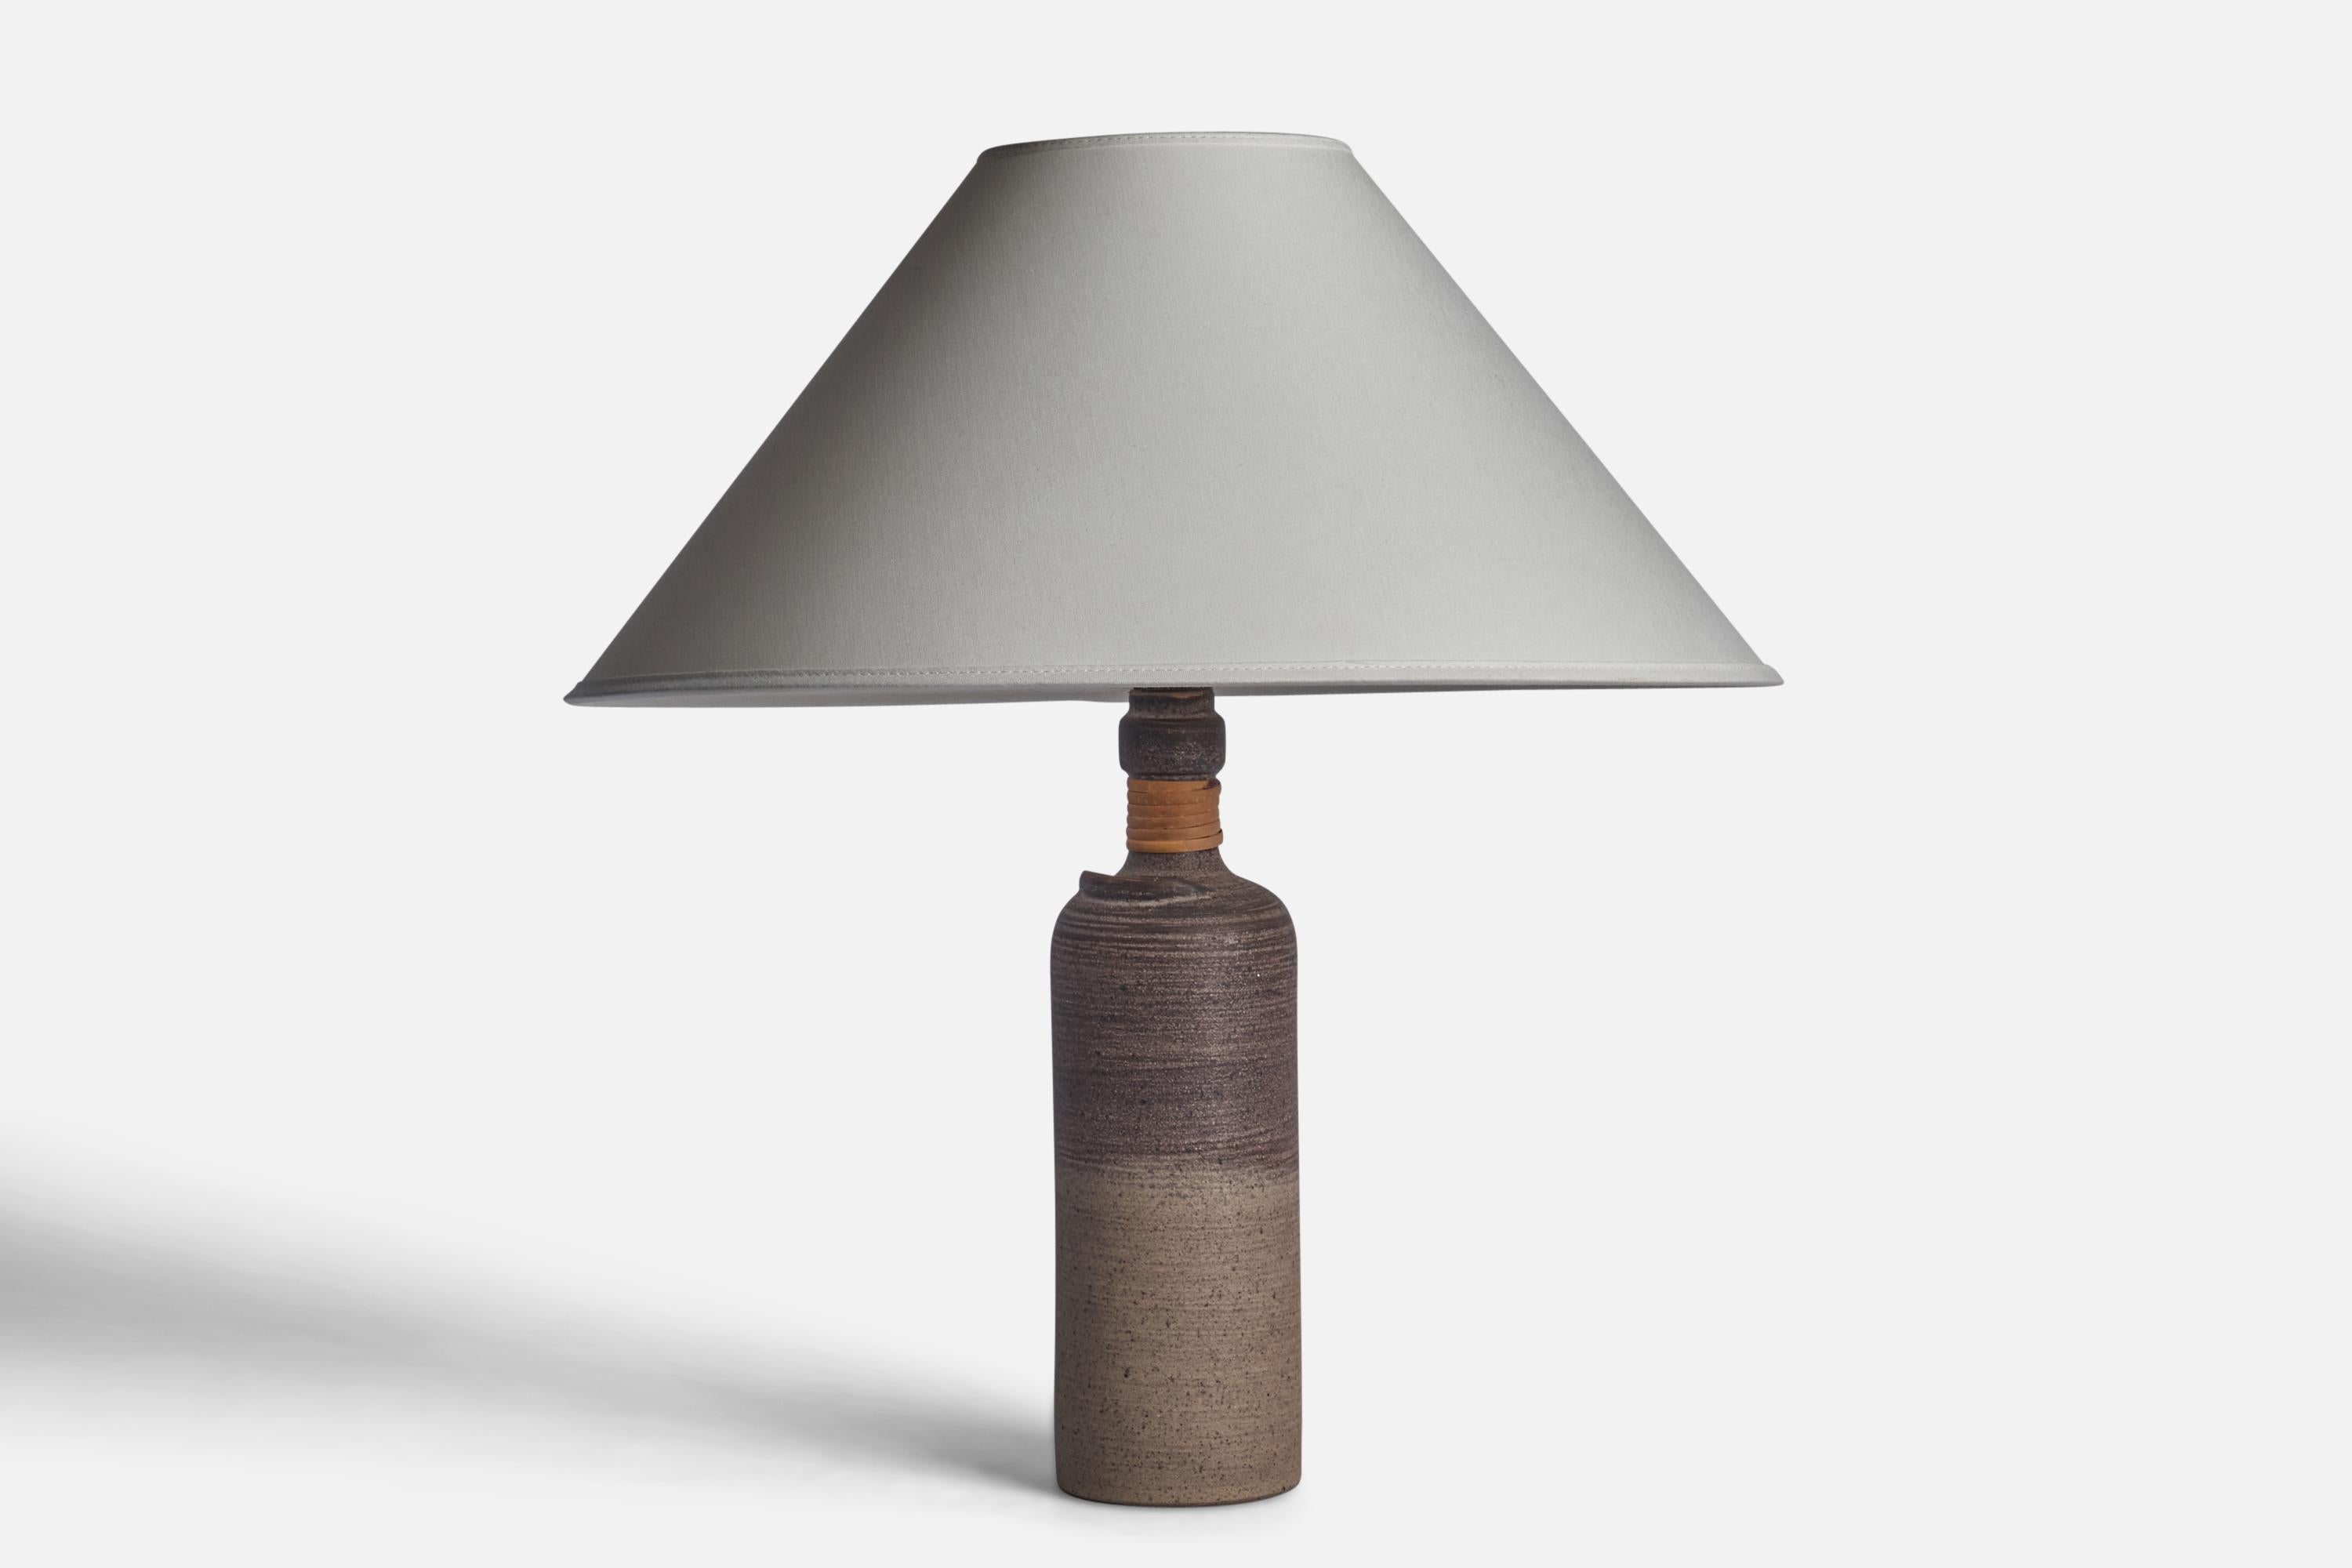 Lampe de table en grès incisé et rotin, émaillée en gris, conçue et produite par Thomas Hellström, Suède, c.C. 1970.

Dimensions de la lampe (pouces) : 12.65